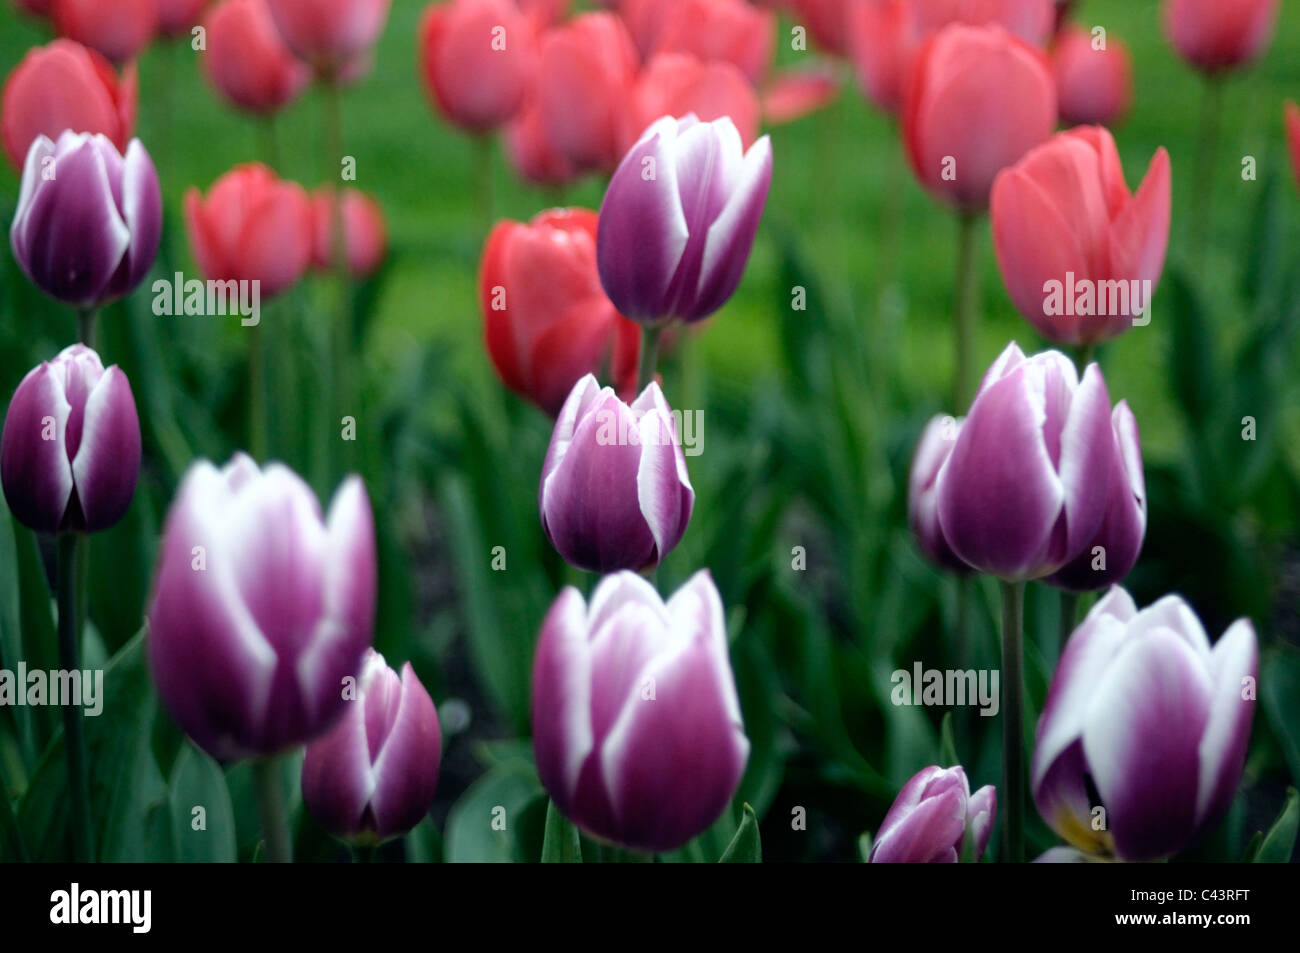 Tulips in Spring. Stock Photo